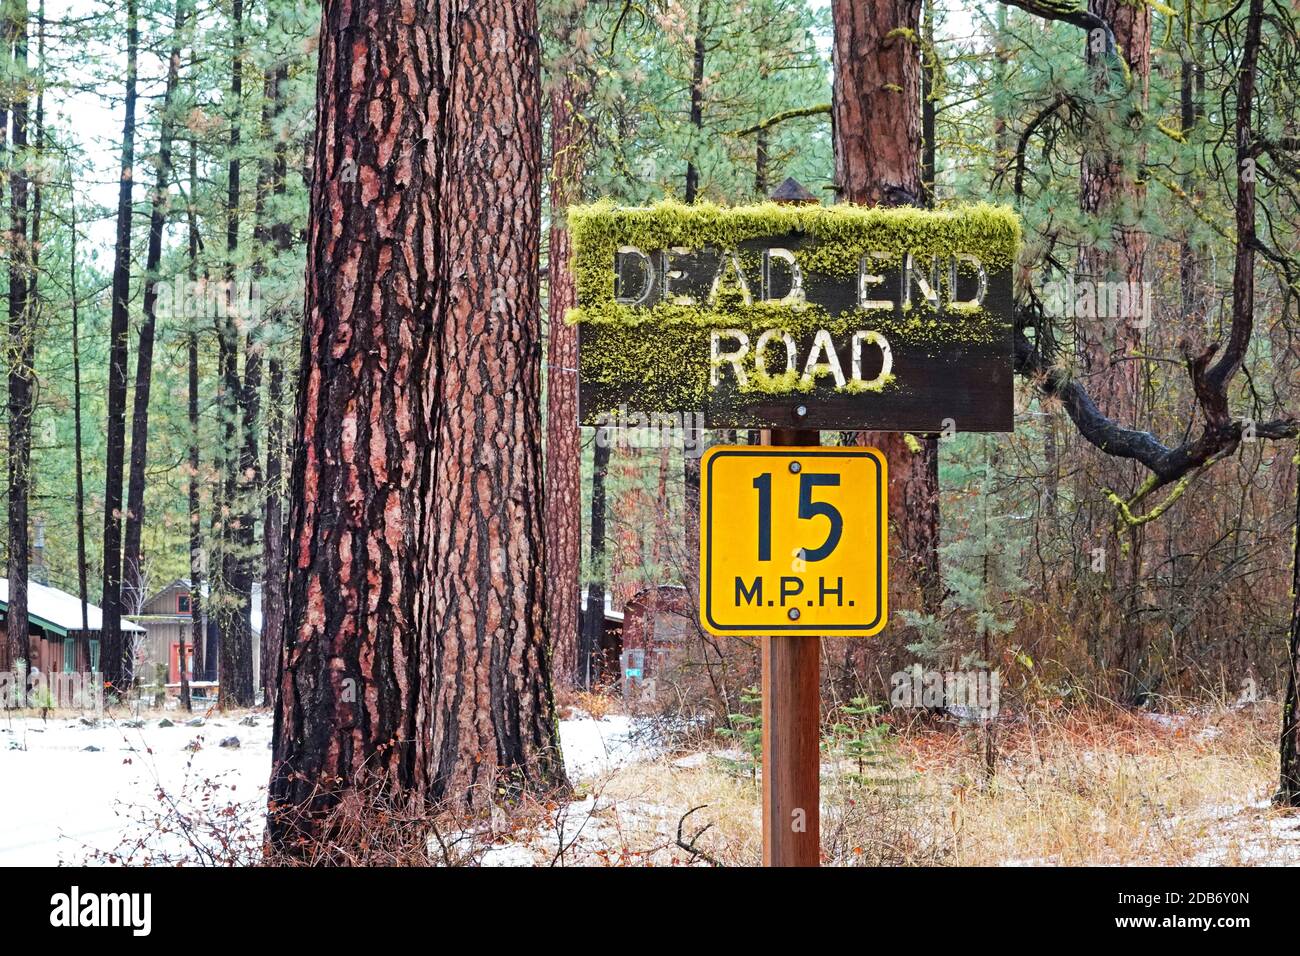 Un panneau de route à l'extrémité morte sur une voie enneigée dans une forêt de pins ponderosa le long de la rivière Metolius dans la chaîne des Cascades du centre de l'Oregon. La communauté est Camp Banque D'Images